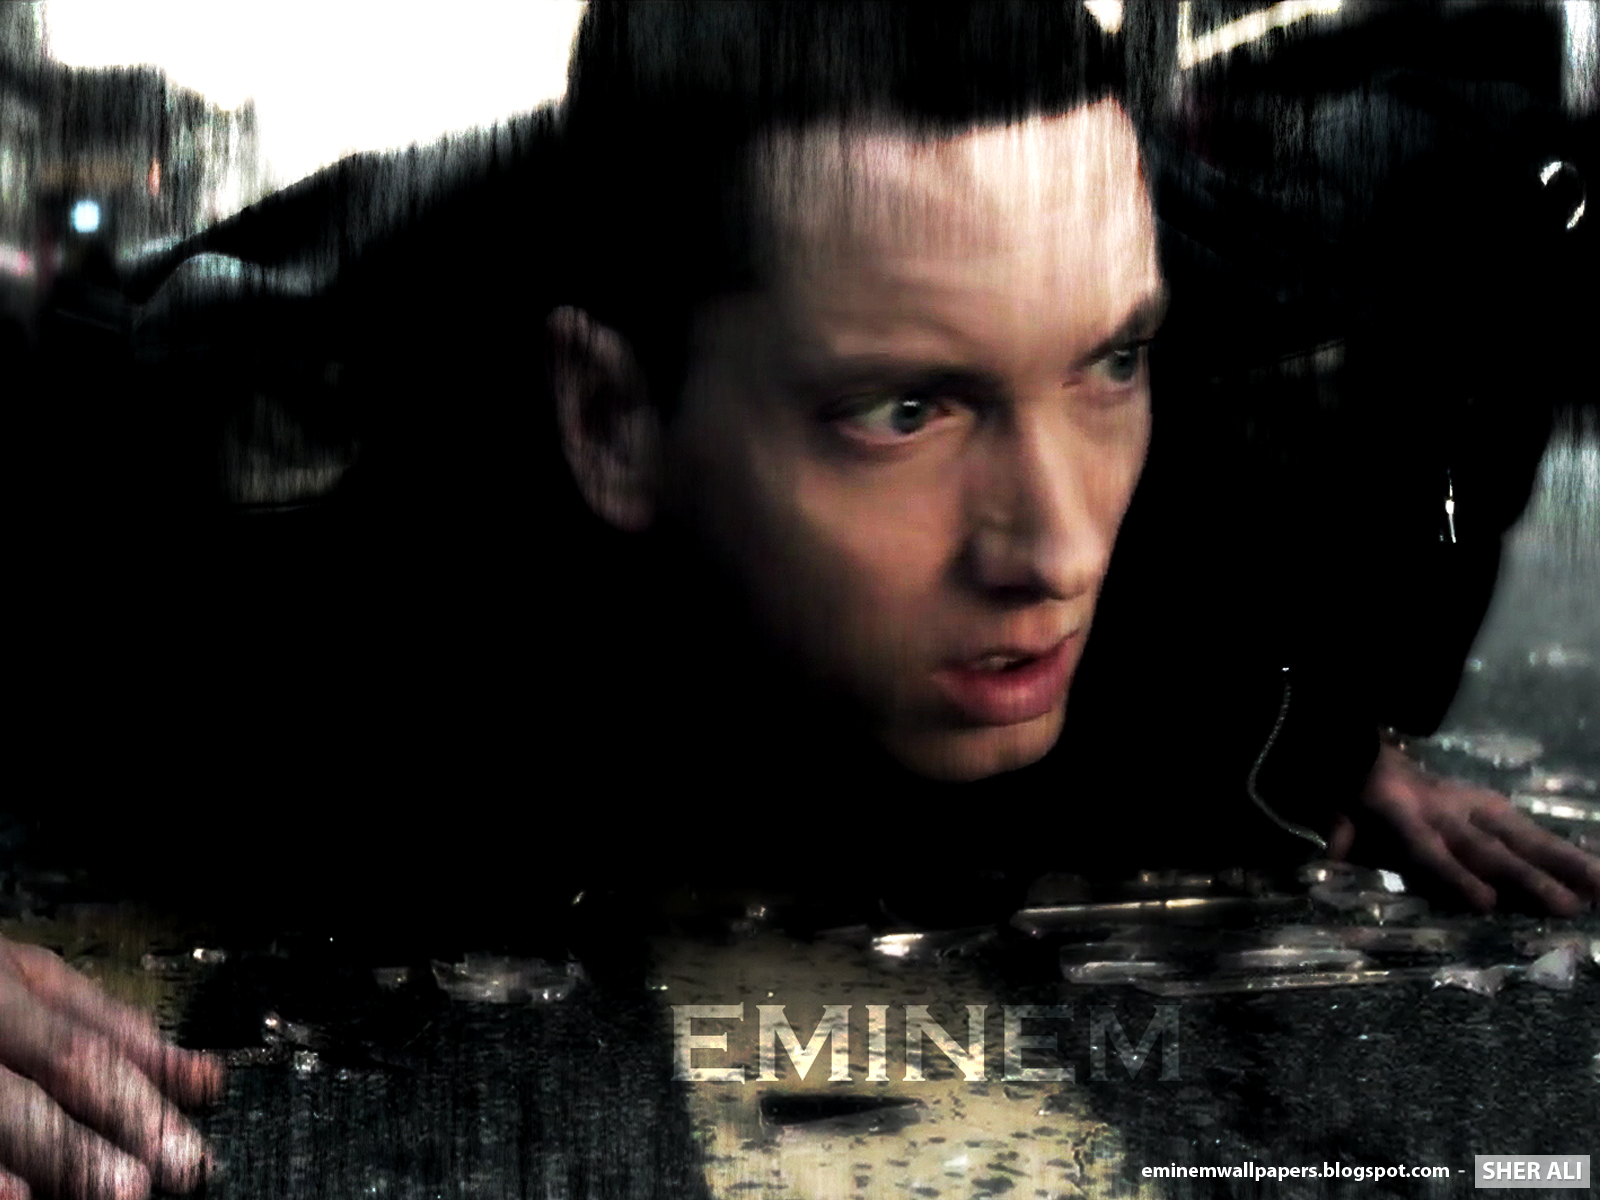 Share To Labels Eminem Wallpaper Best